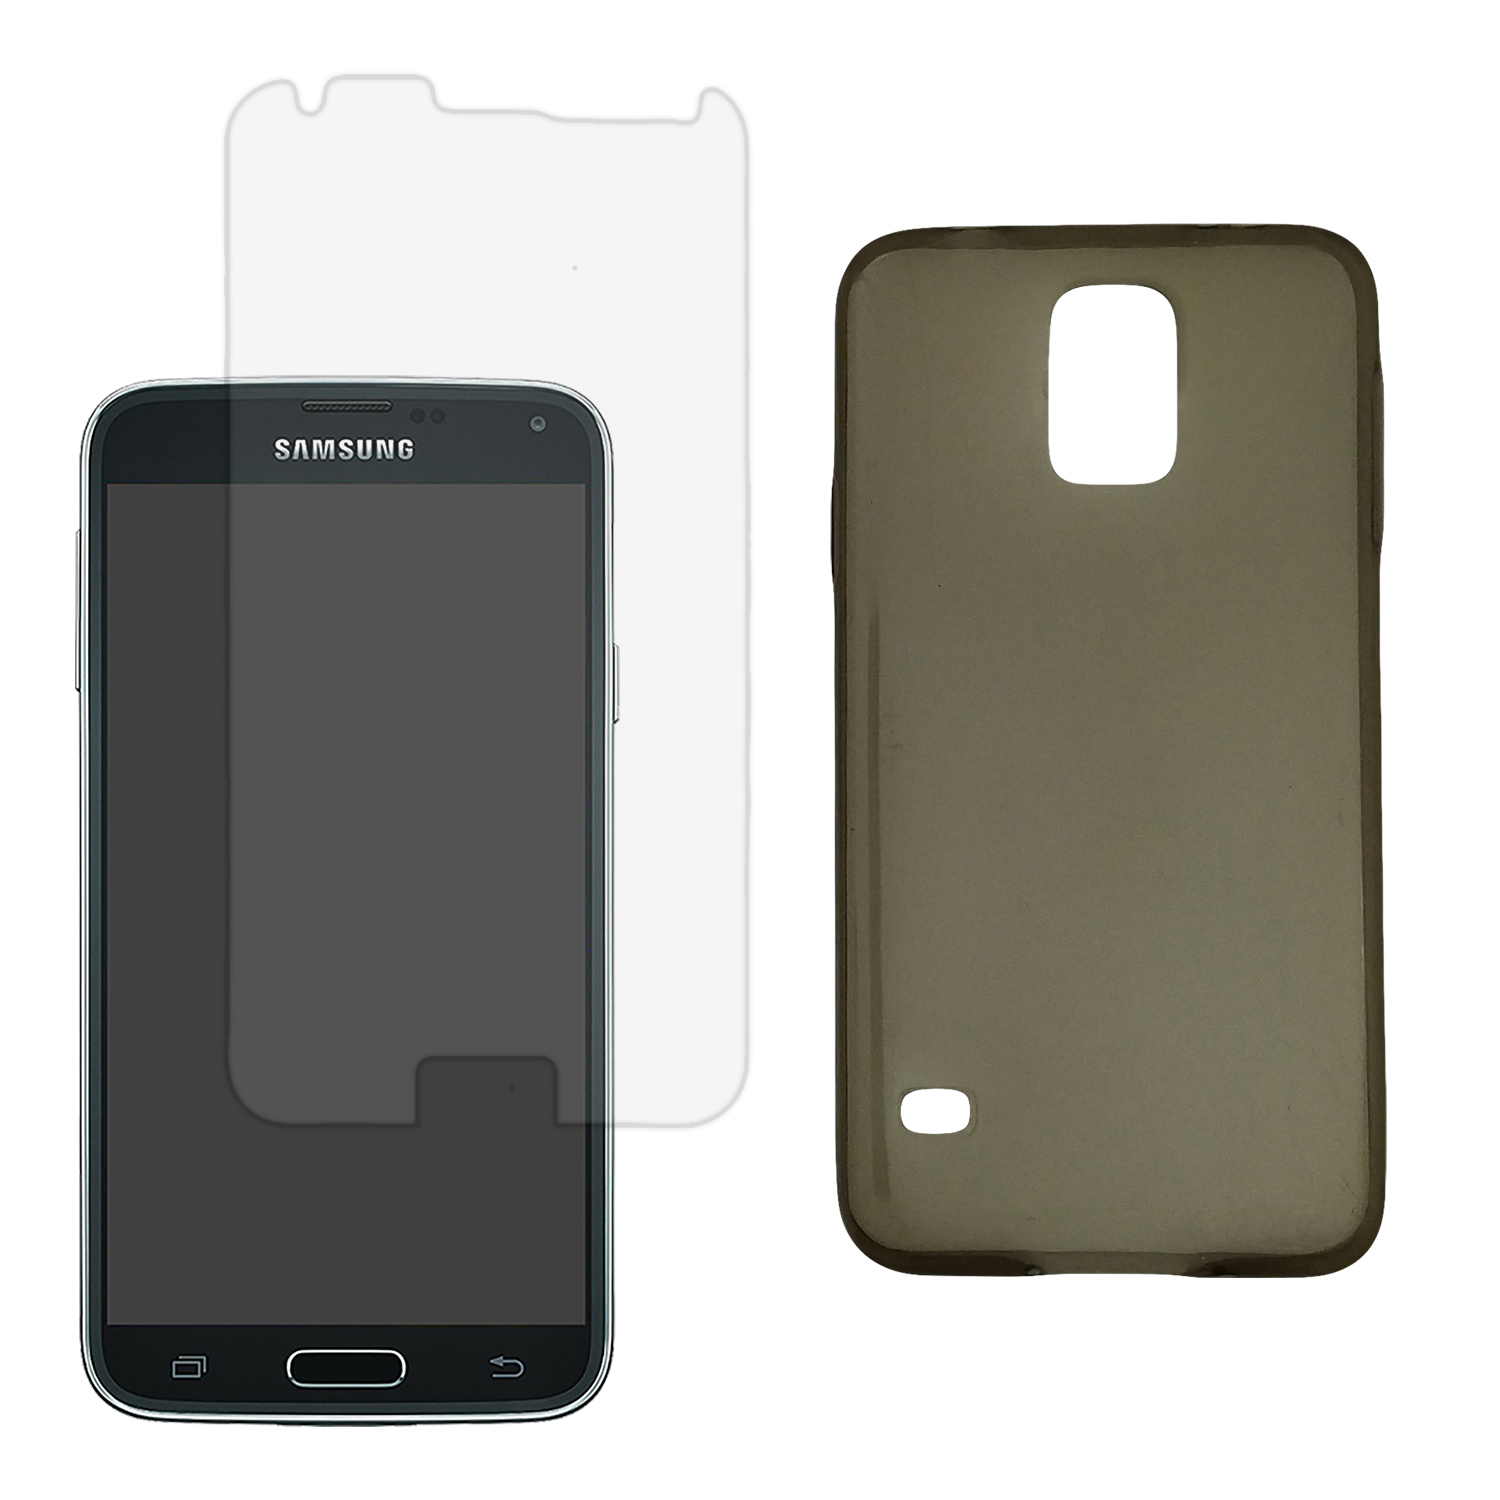 کاور توتو مدل M35C مناسب برای گوشی موبایل سامسونگ Galaxy S5 به همراه محافظ صفحه نمایش